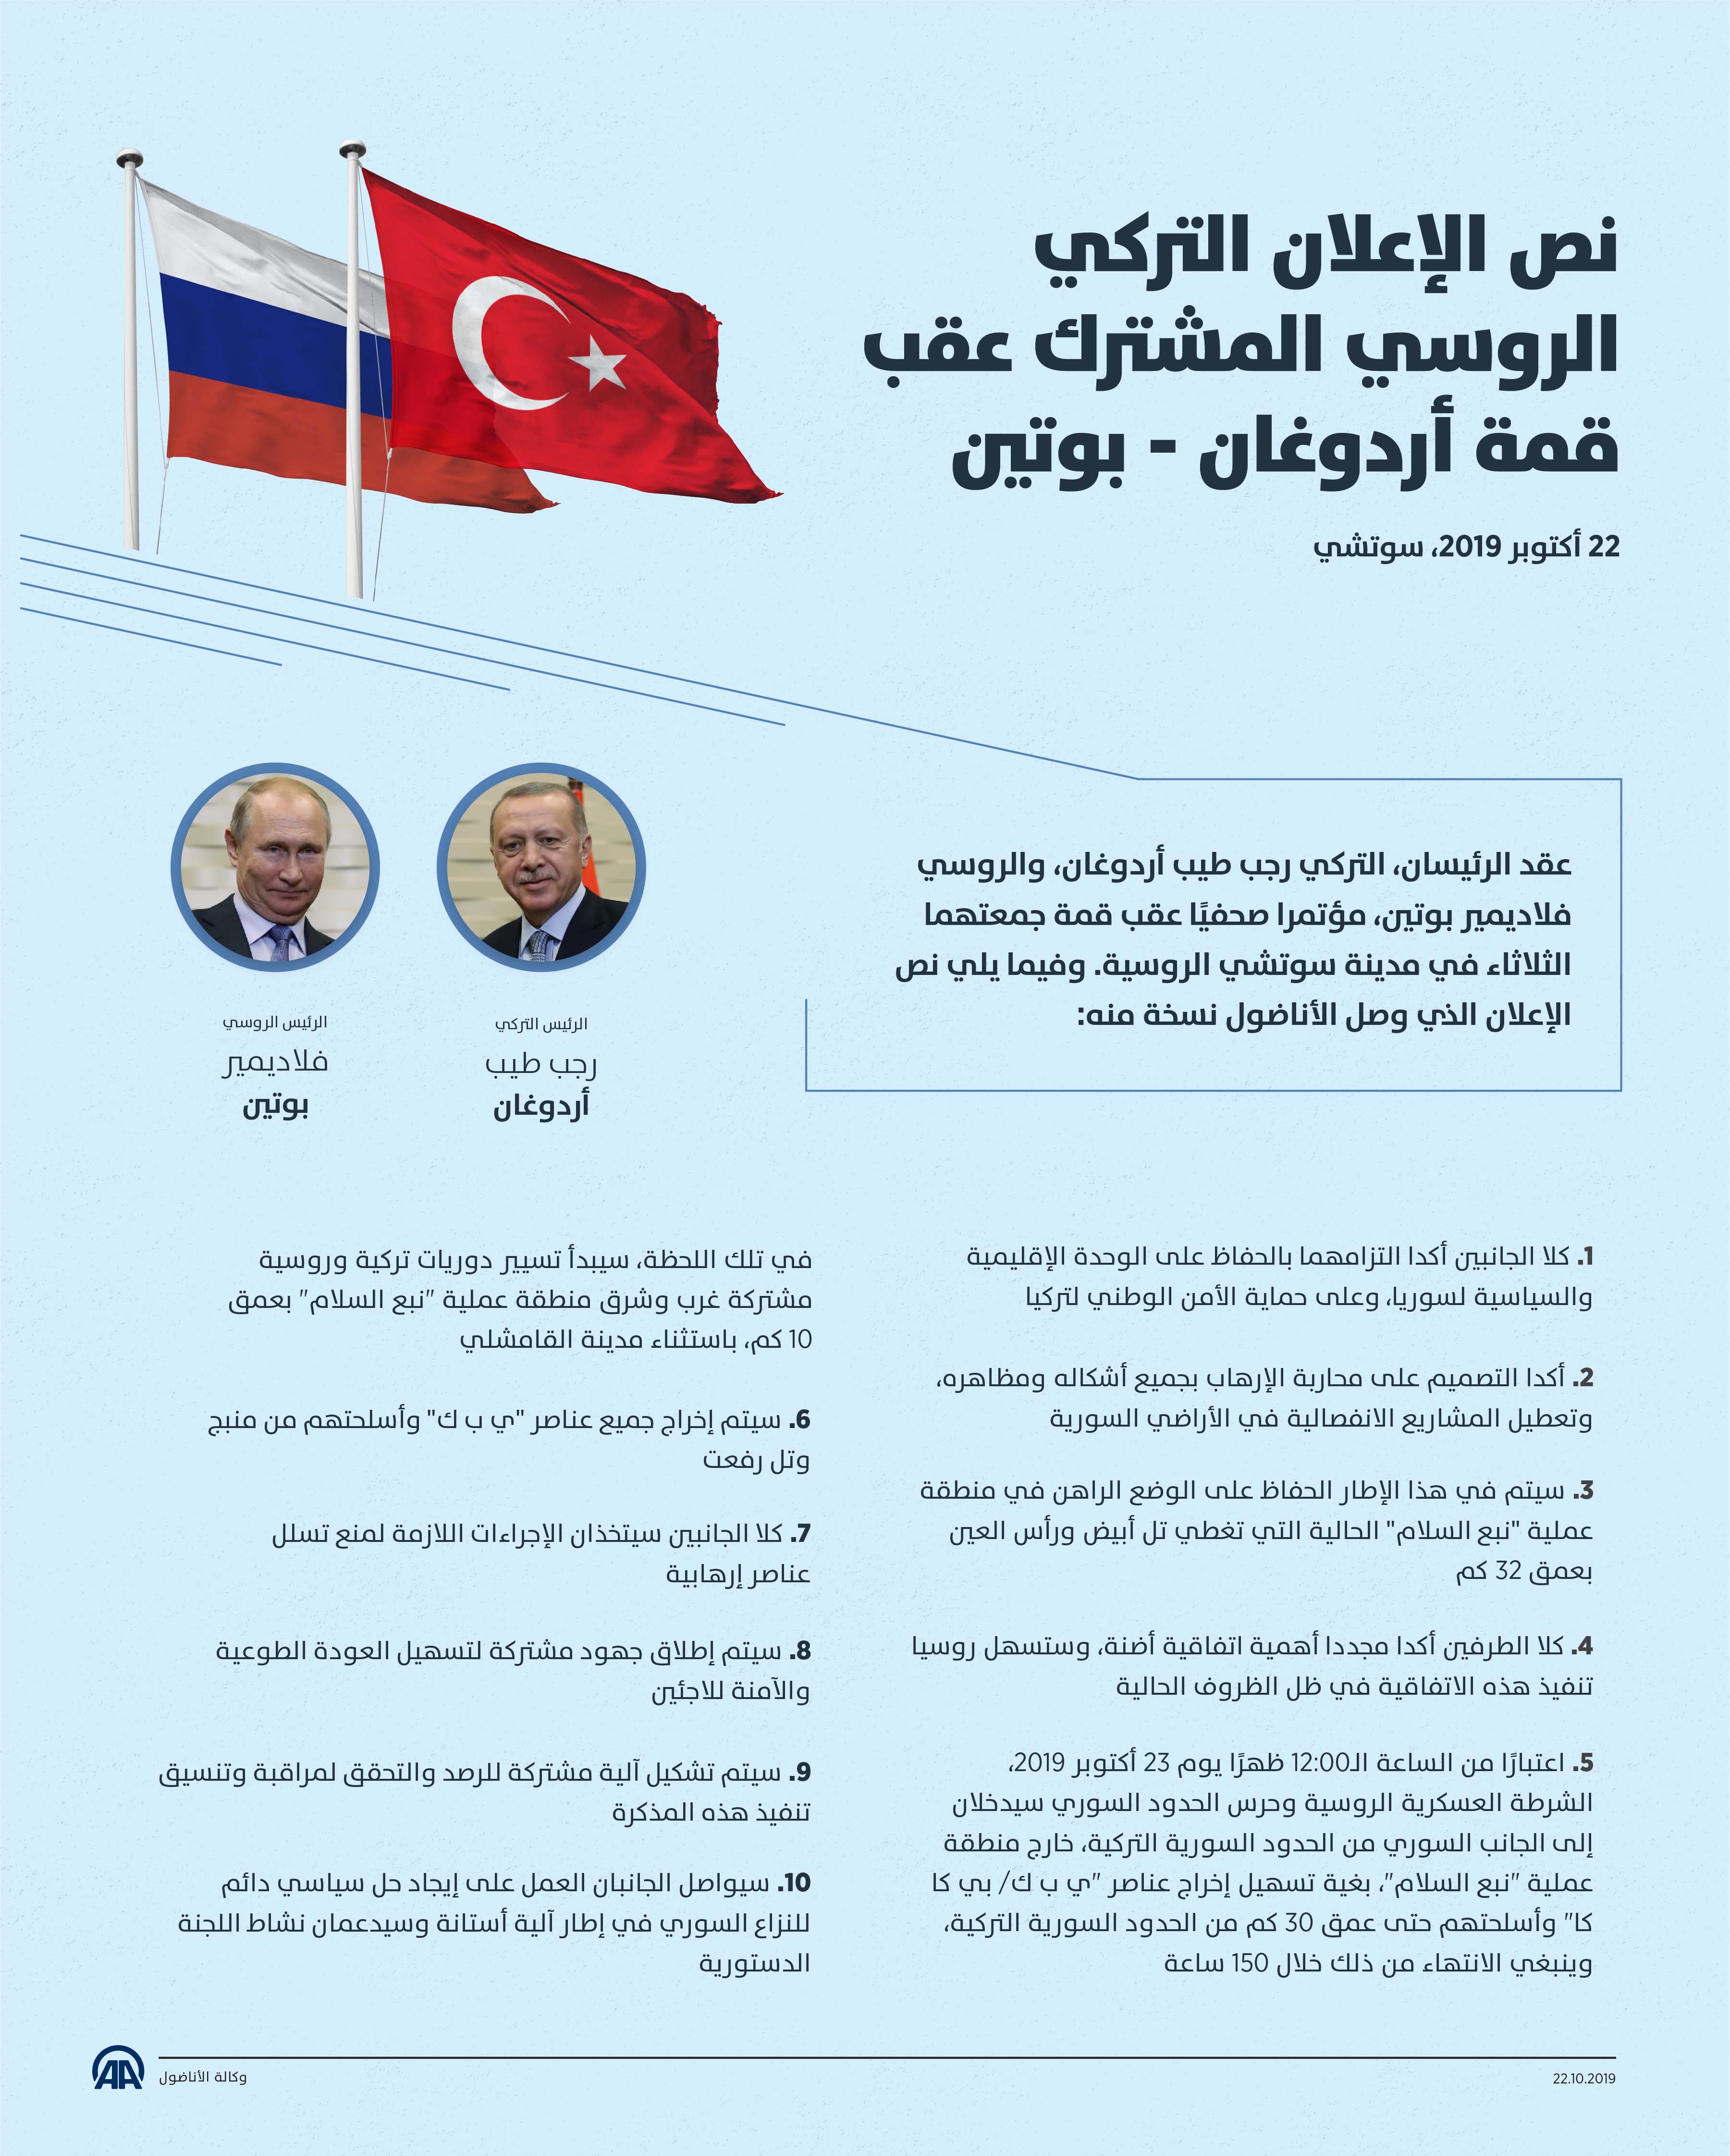 نص الإعلان التركي الروسي المشترك عقب قمة أردوغان - بوتين